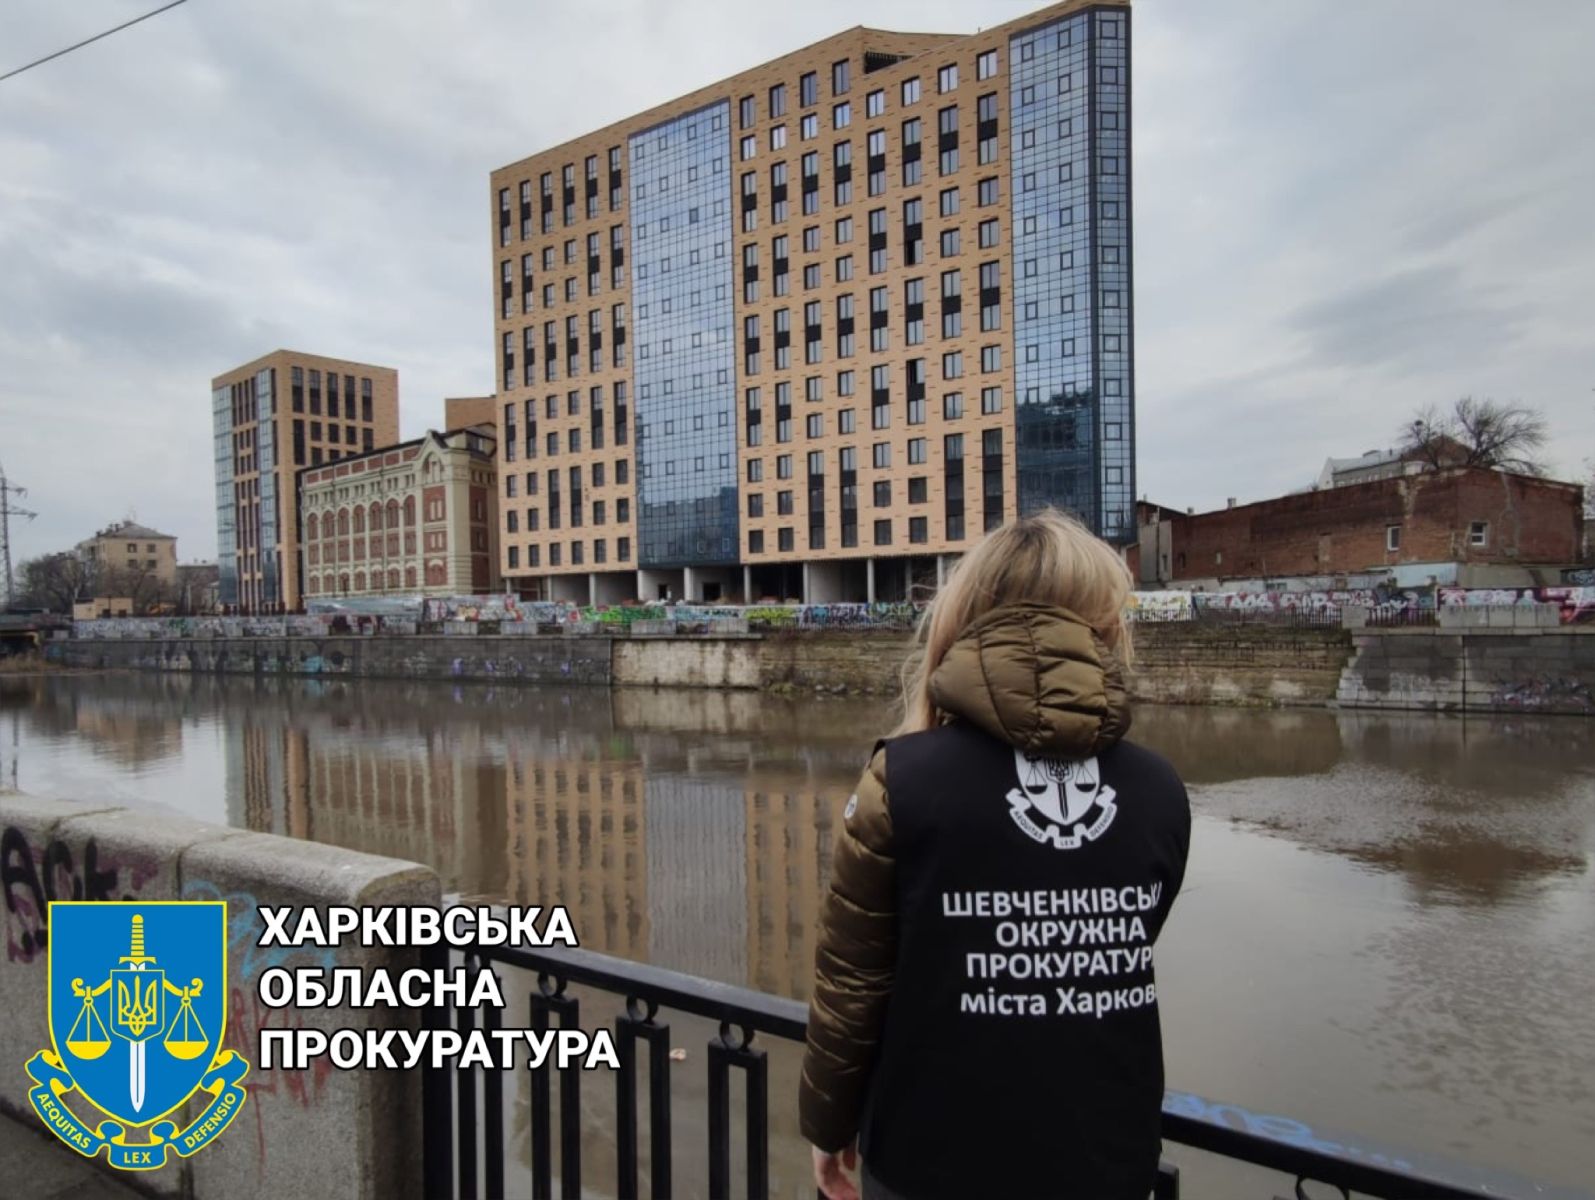 Элитный новострой в центре Харькова оказался незаконным